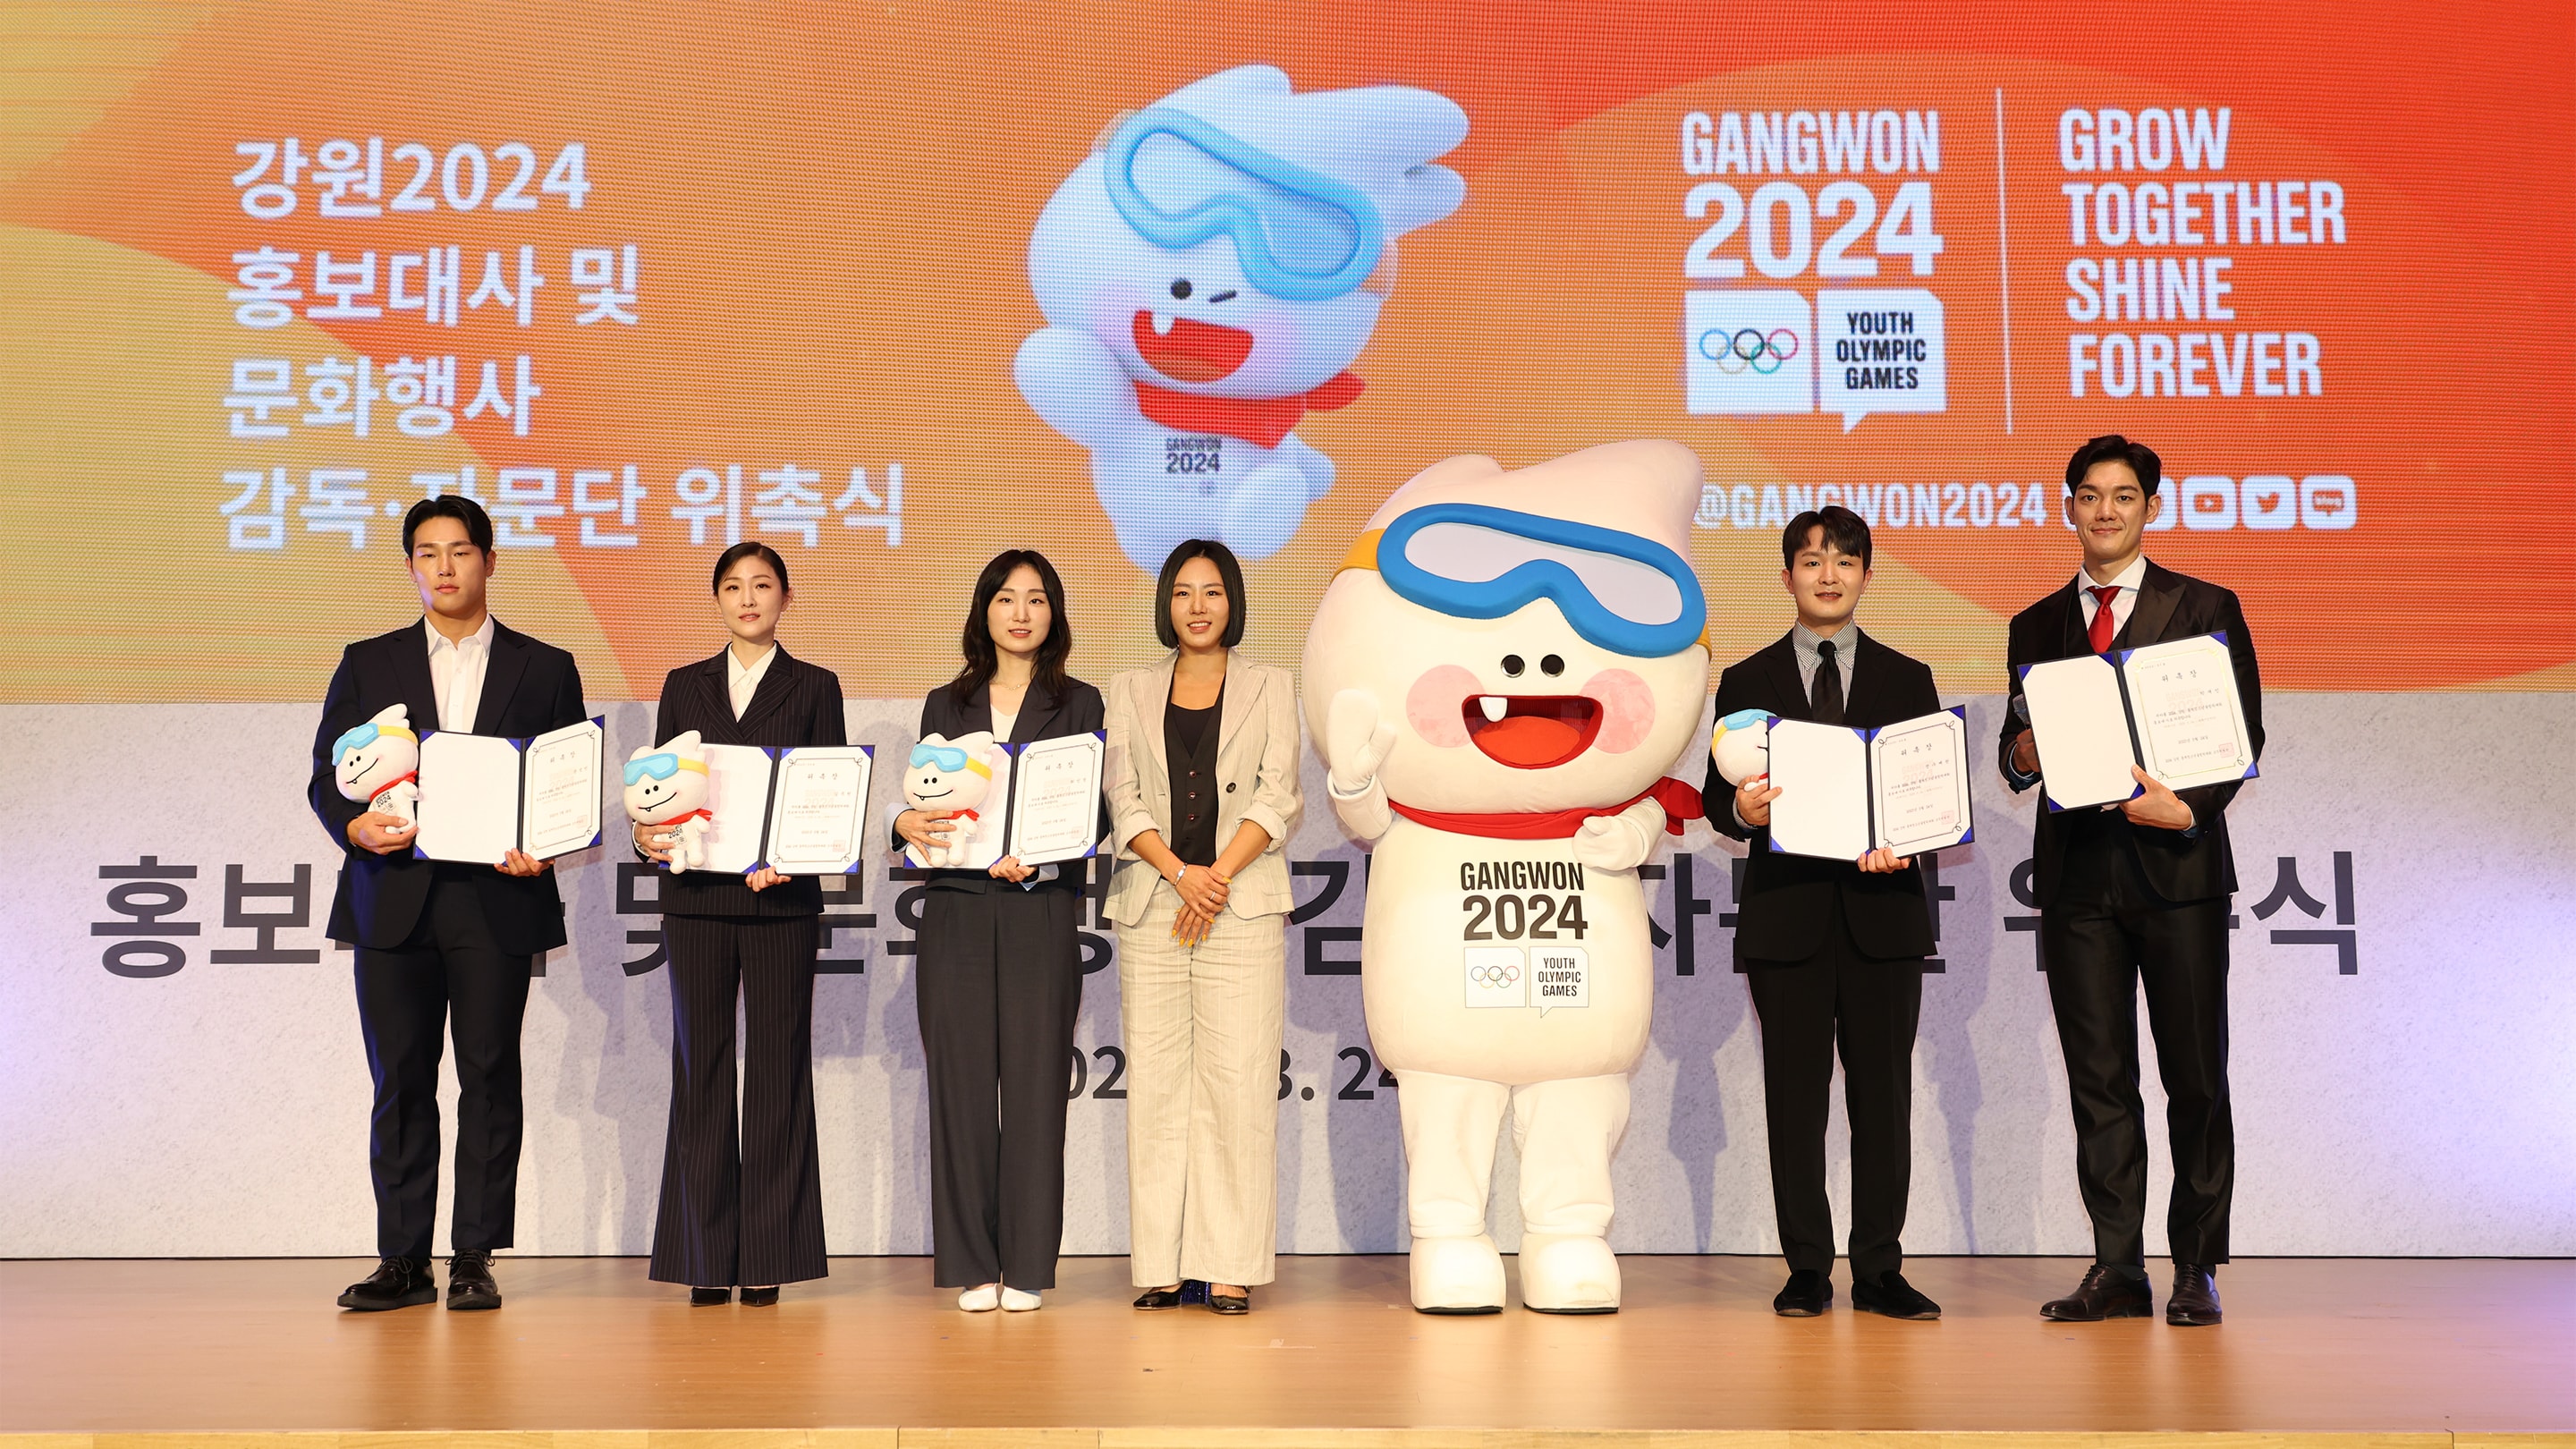 Gangwon 2024 Mascot